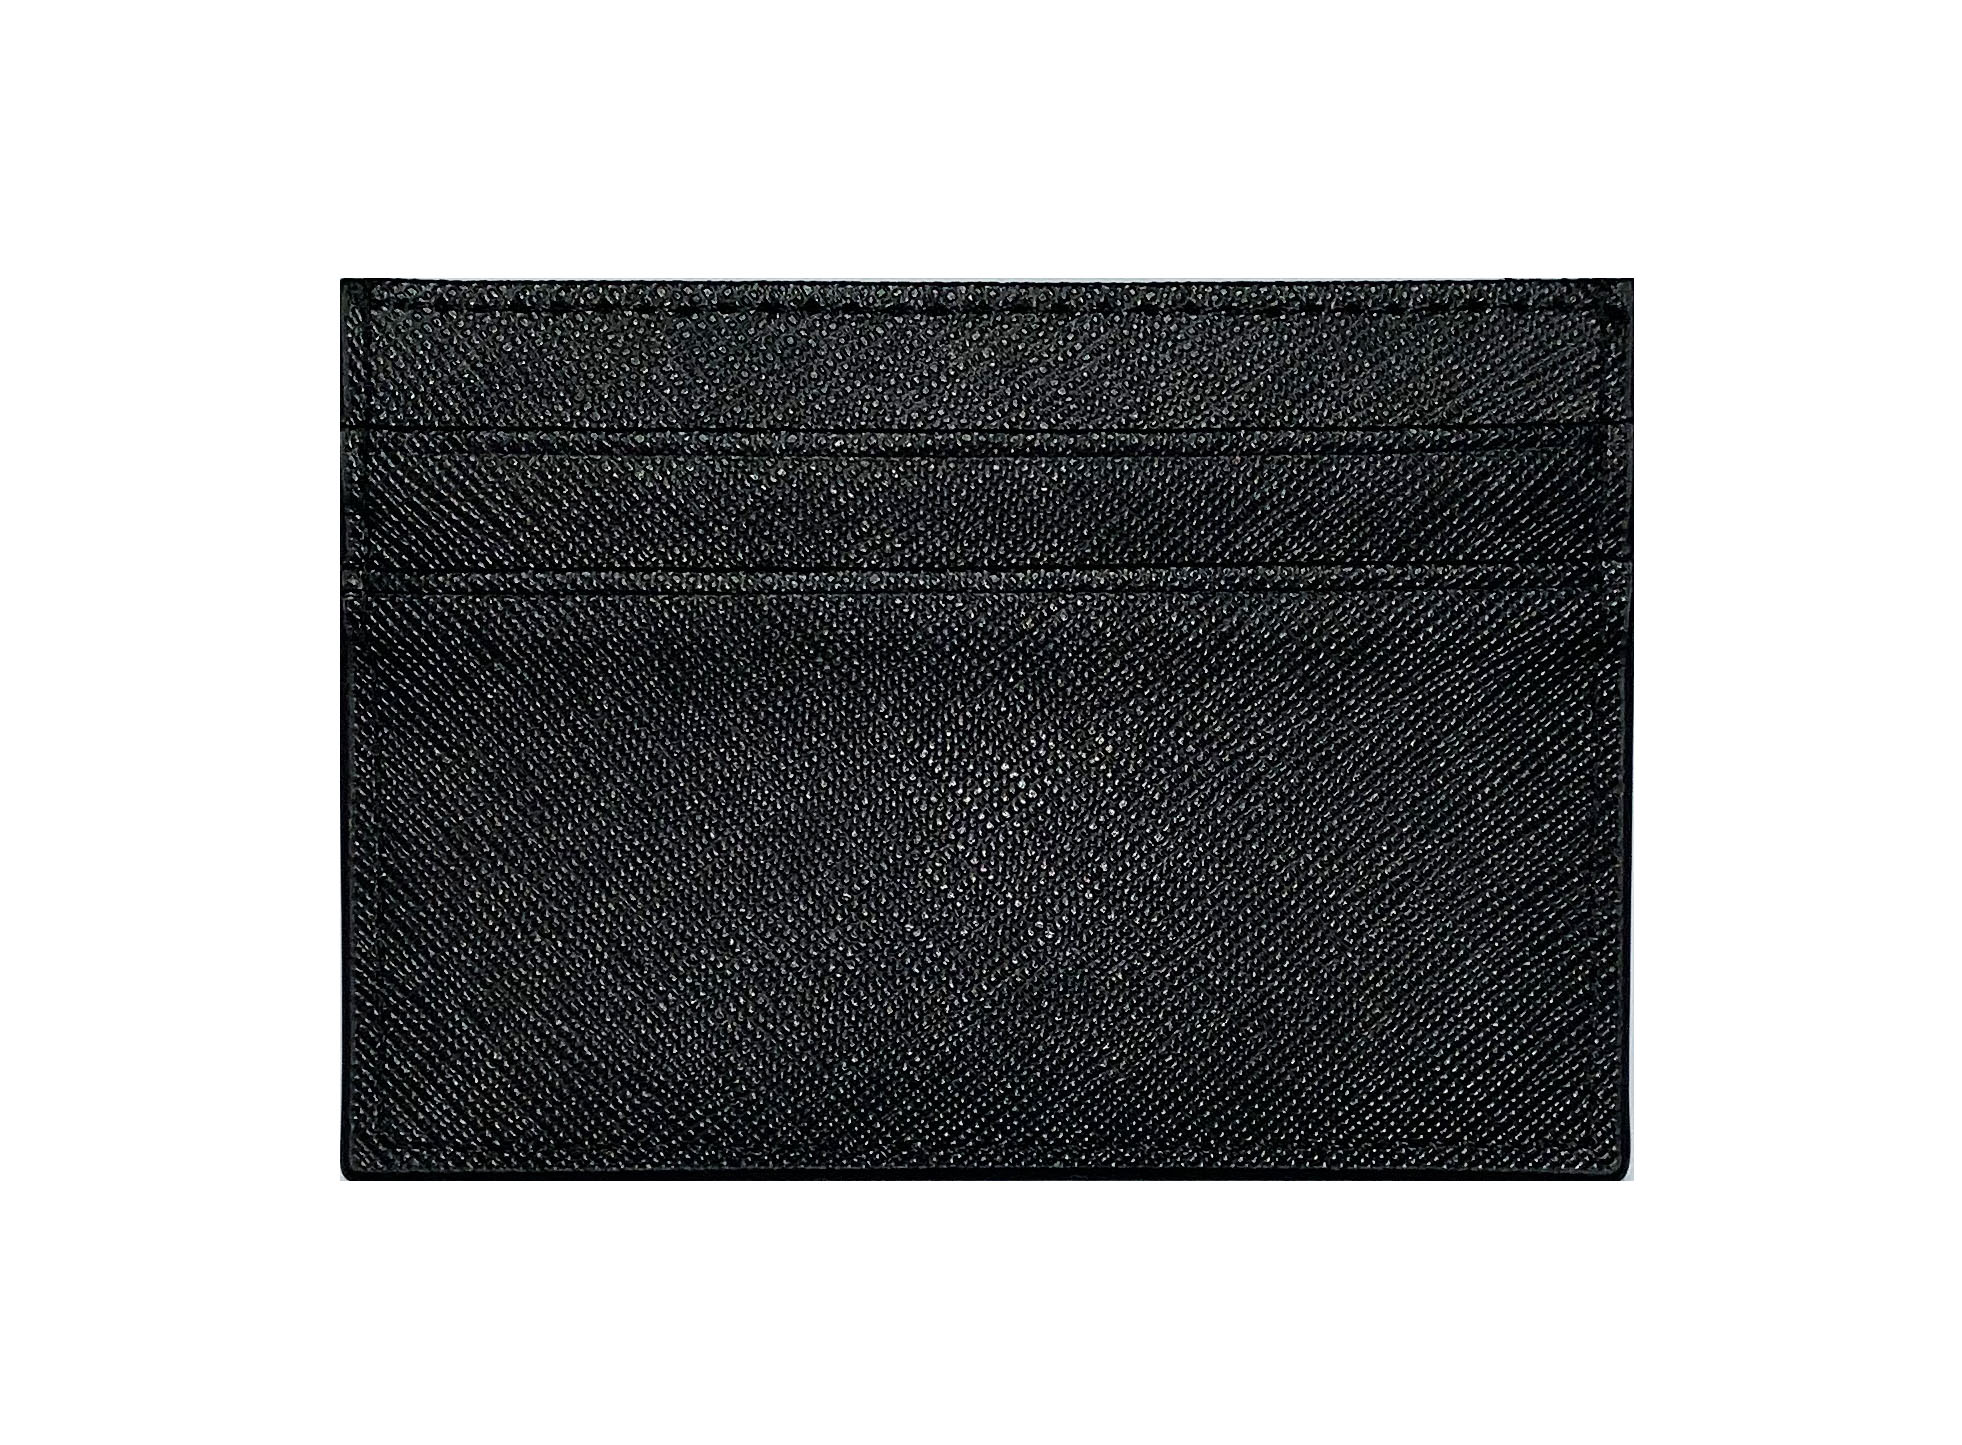 Black leather card holder - SOG | Supremacy of God